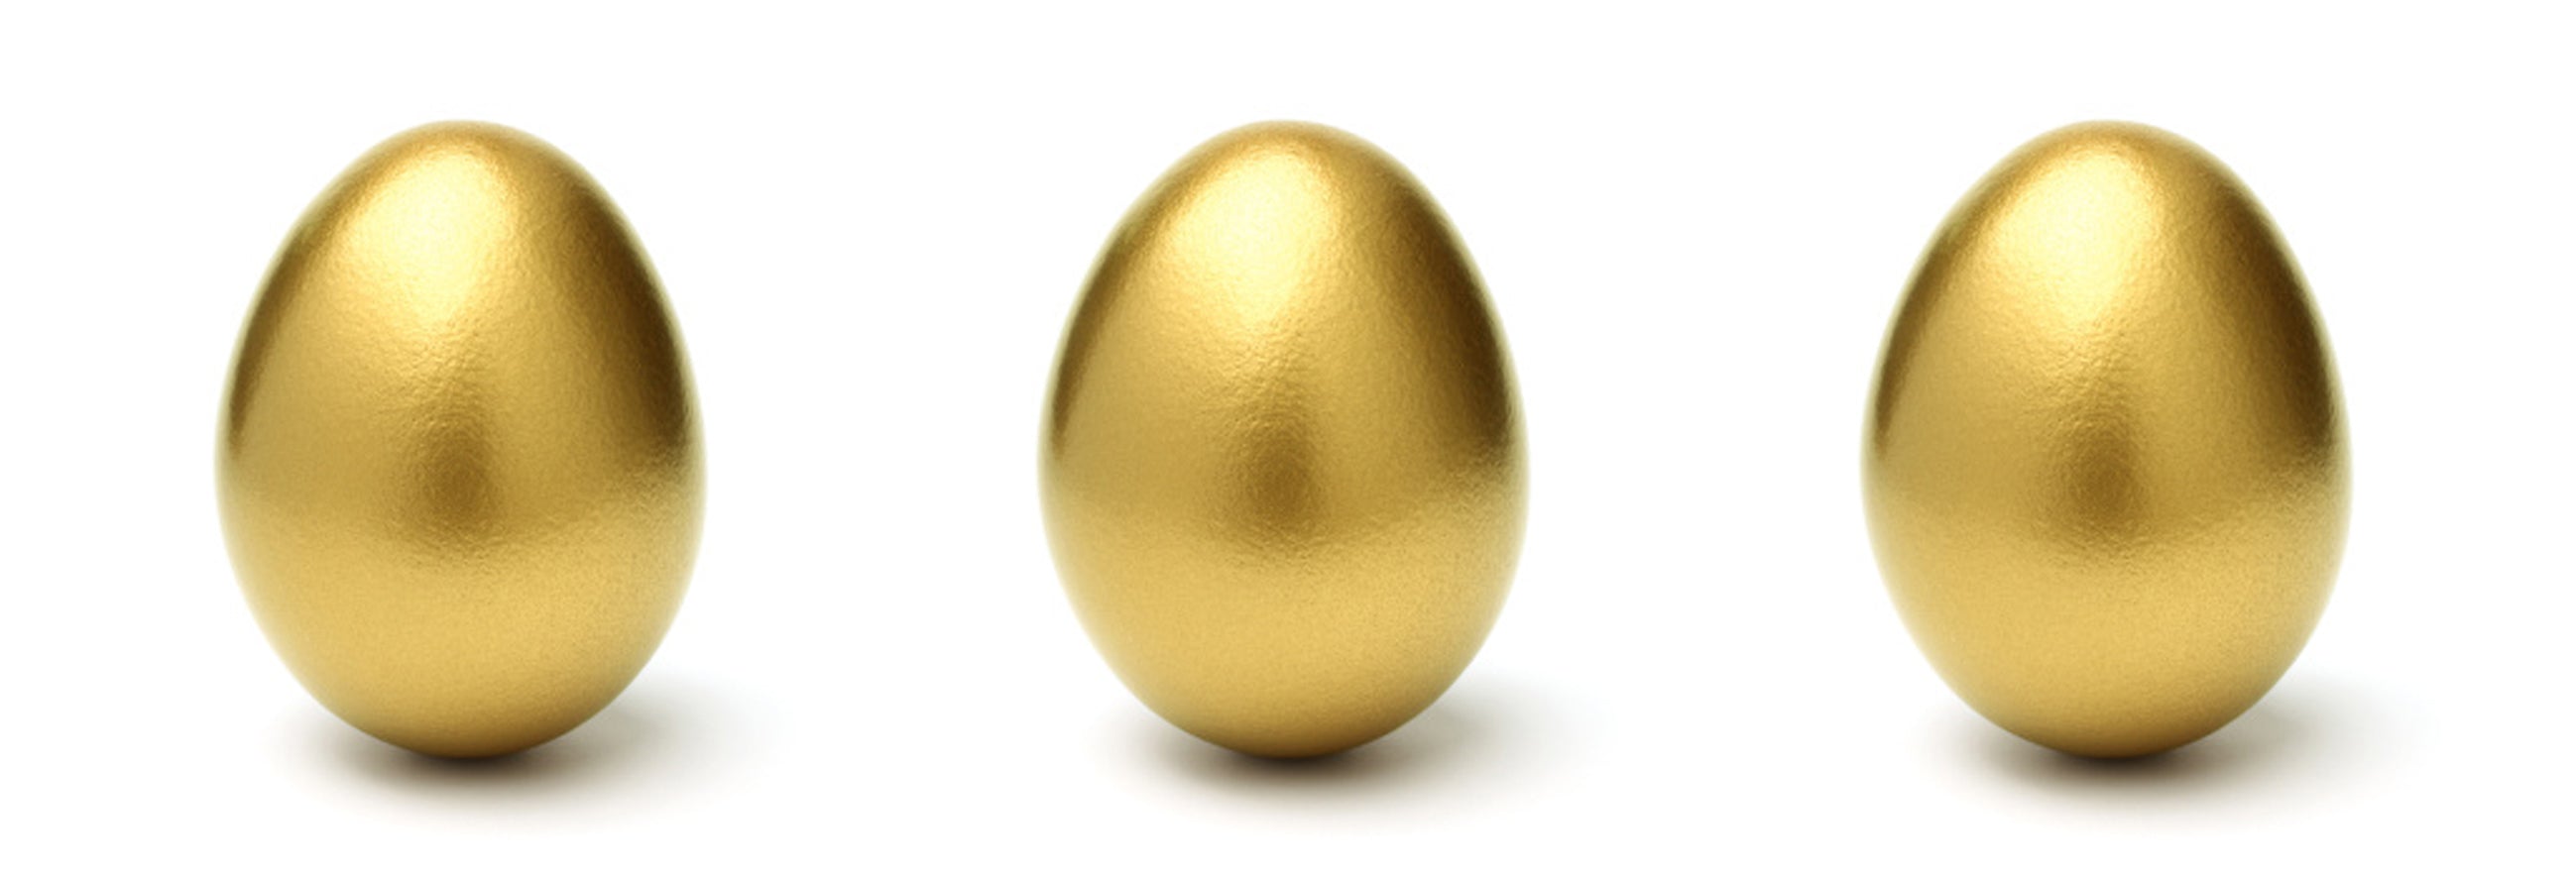 Online Easter Egg hunt